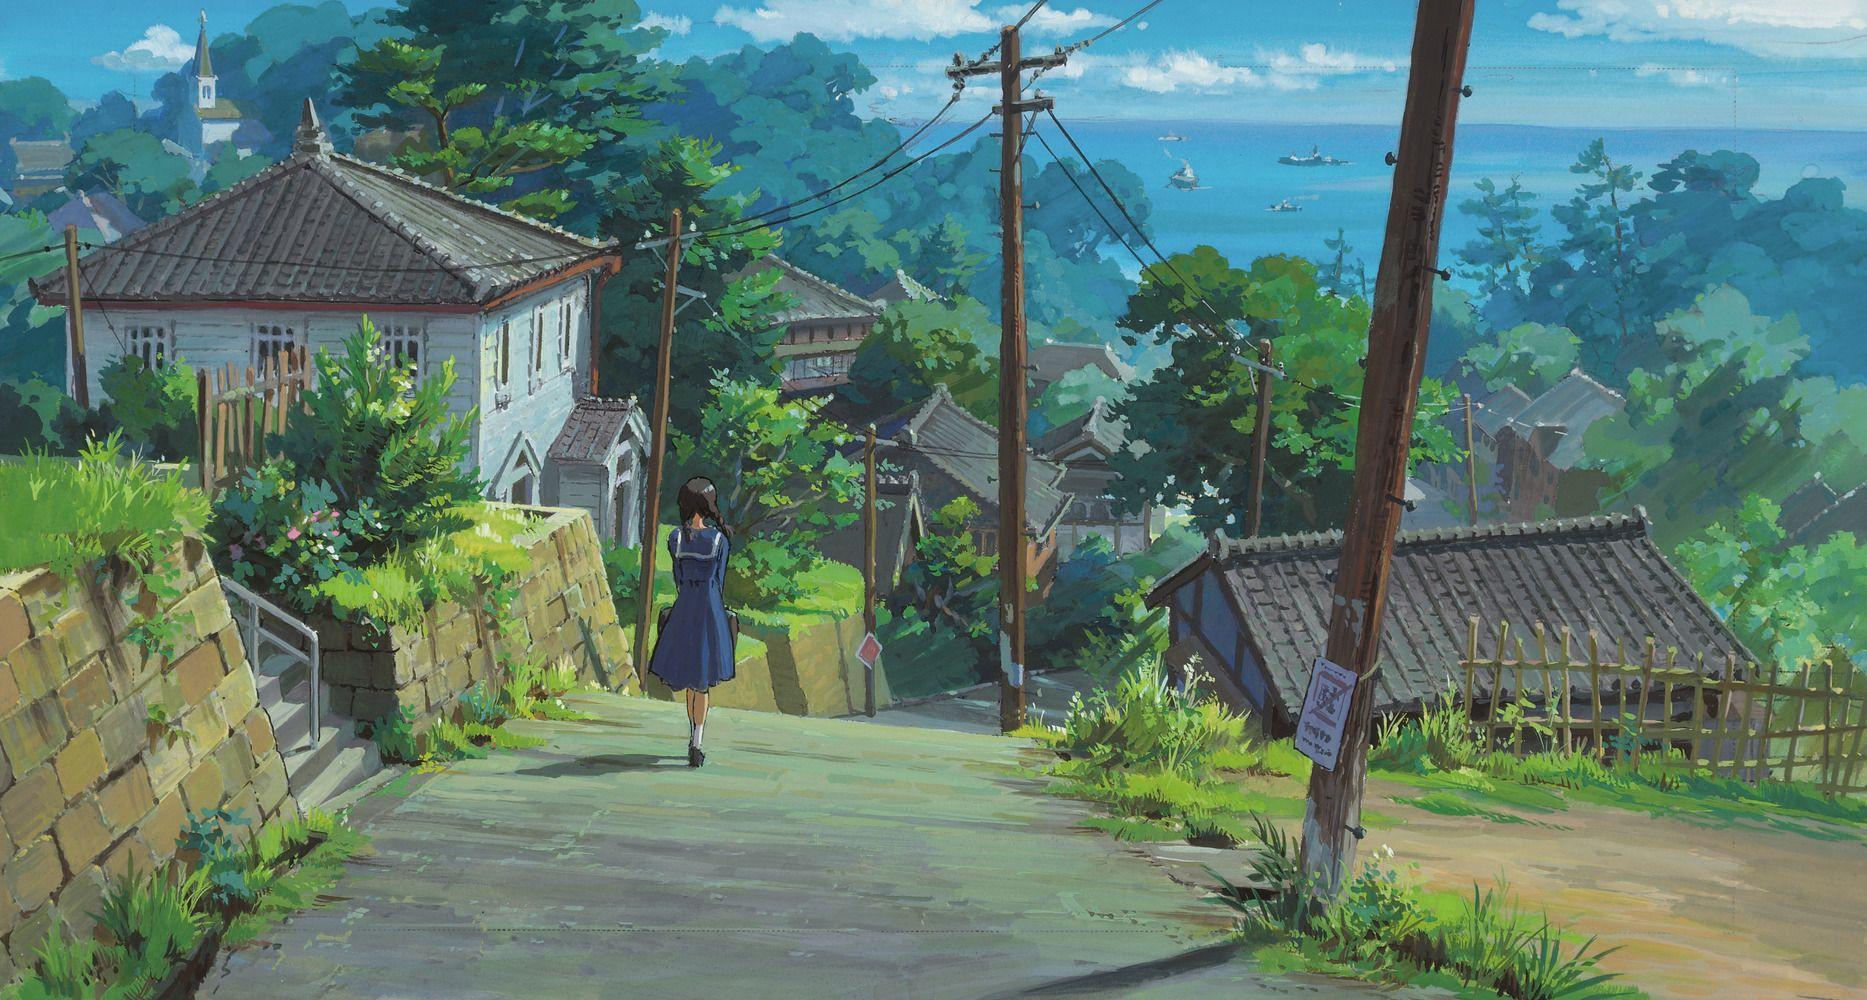 Anime làng (Anime village): Làng Anime này tràn ngập những con người và sự kiện độc đáo. Bạn sẽ có cơ hội để khám phá thị trấn nhỏ đáng yêu với những nhân vật Anime cực kỳ đáng yêu. Đương nhiên, đội ngũ diễn viên chính lành mạnh sẽ khiến bạn vô cùng ngạc nhiên và thích thú.